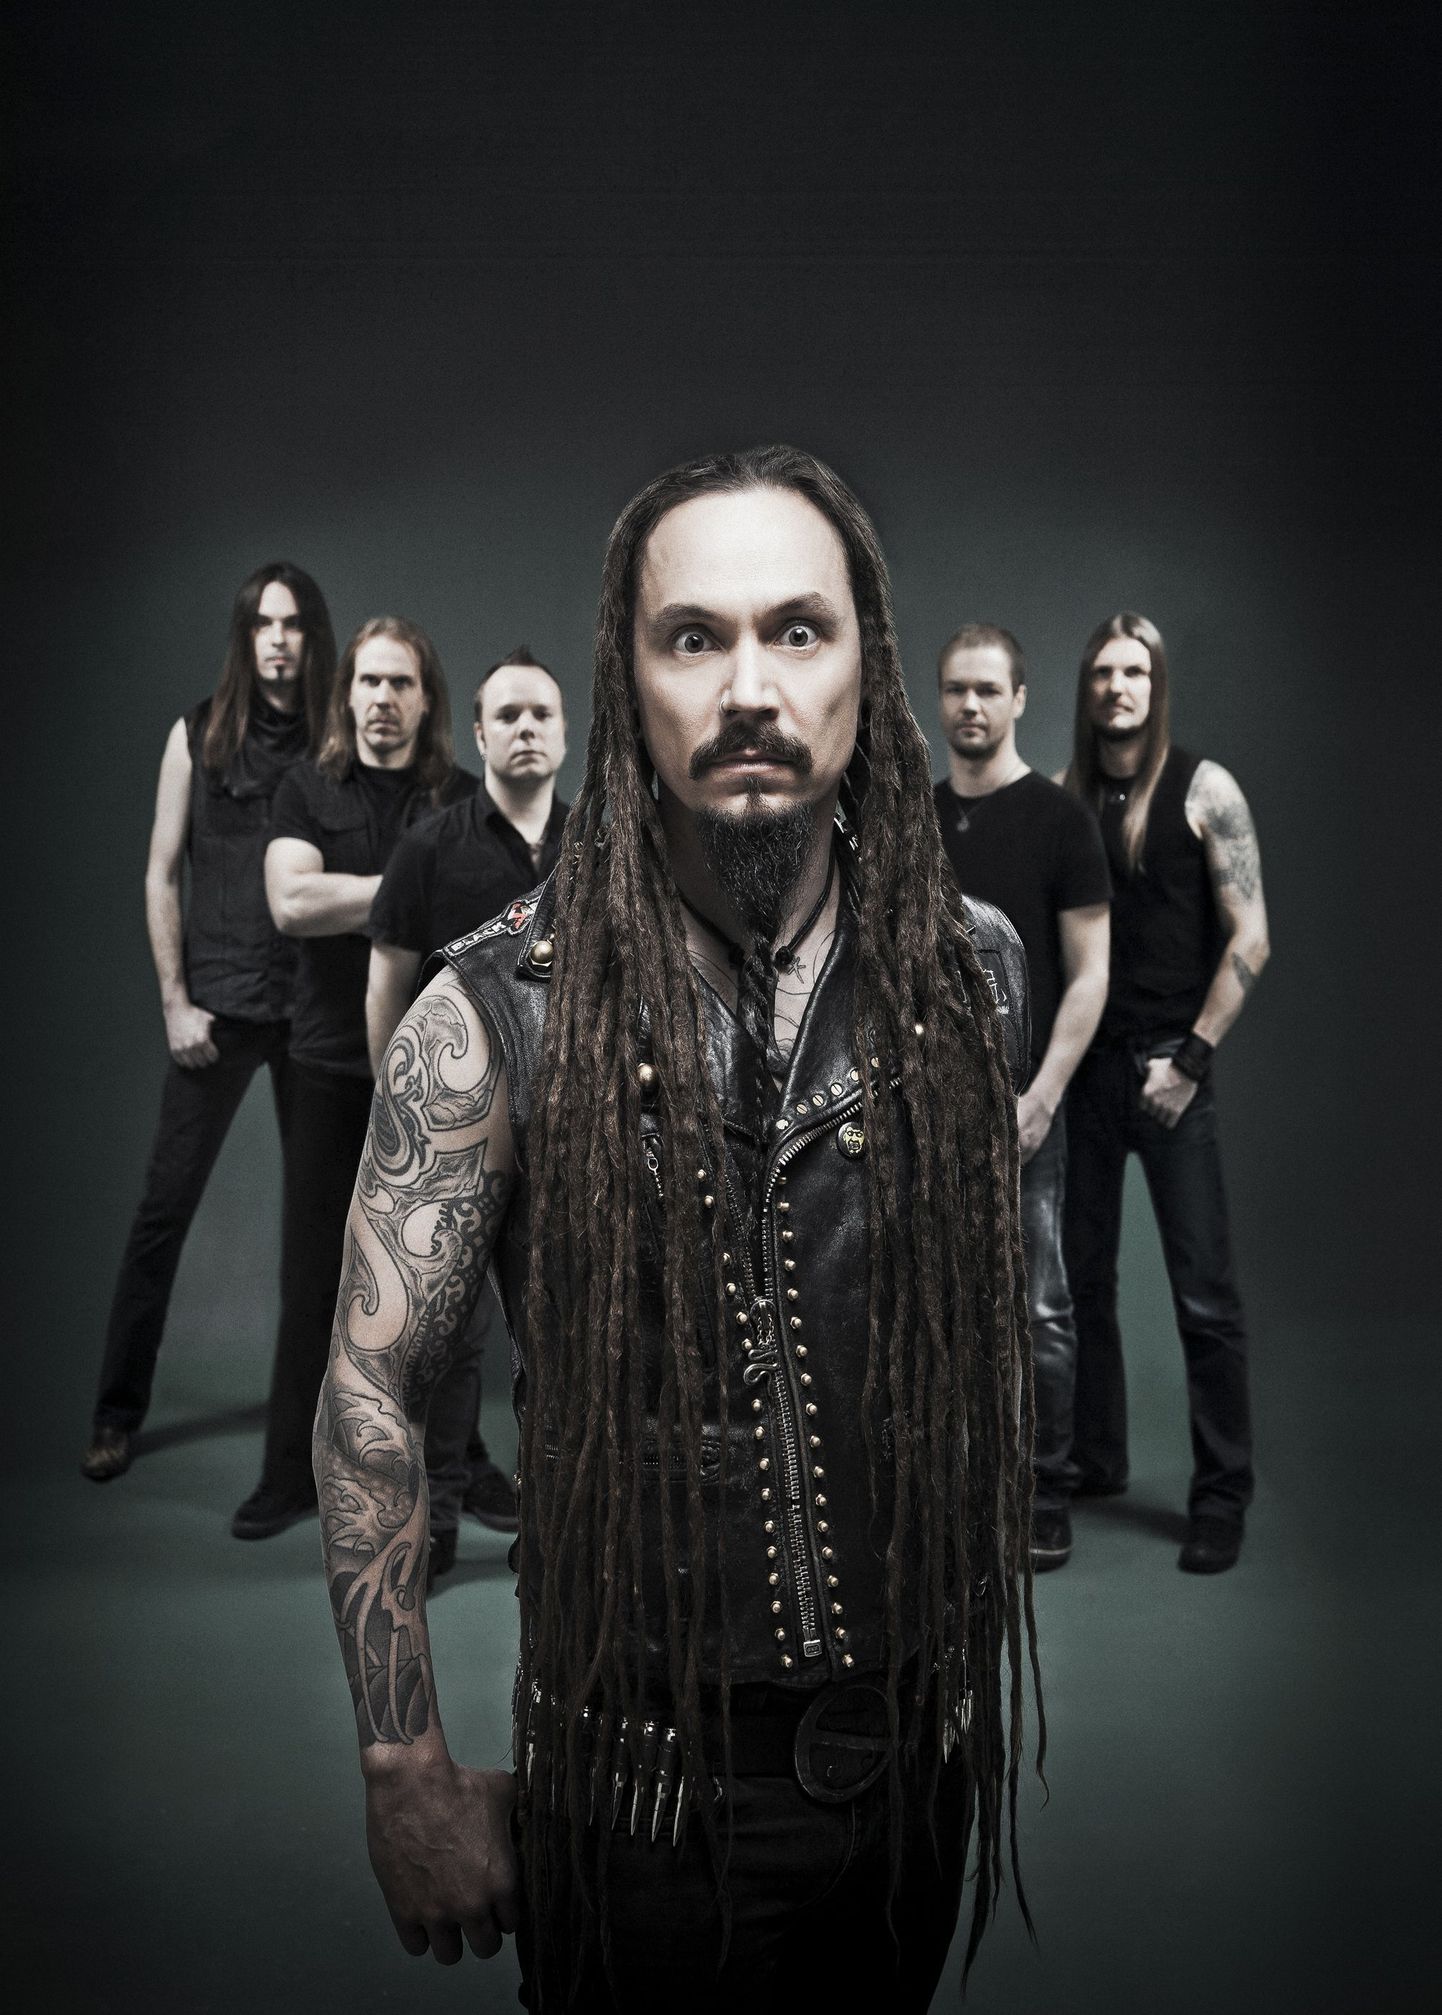 Soome metalmuusika üks alustalasid - Amorphis